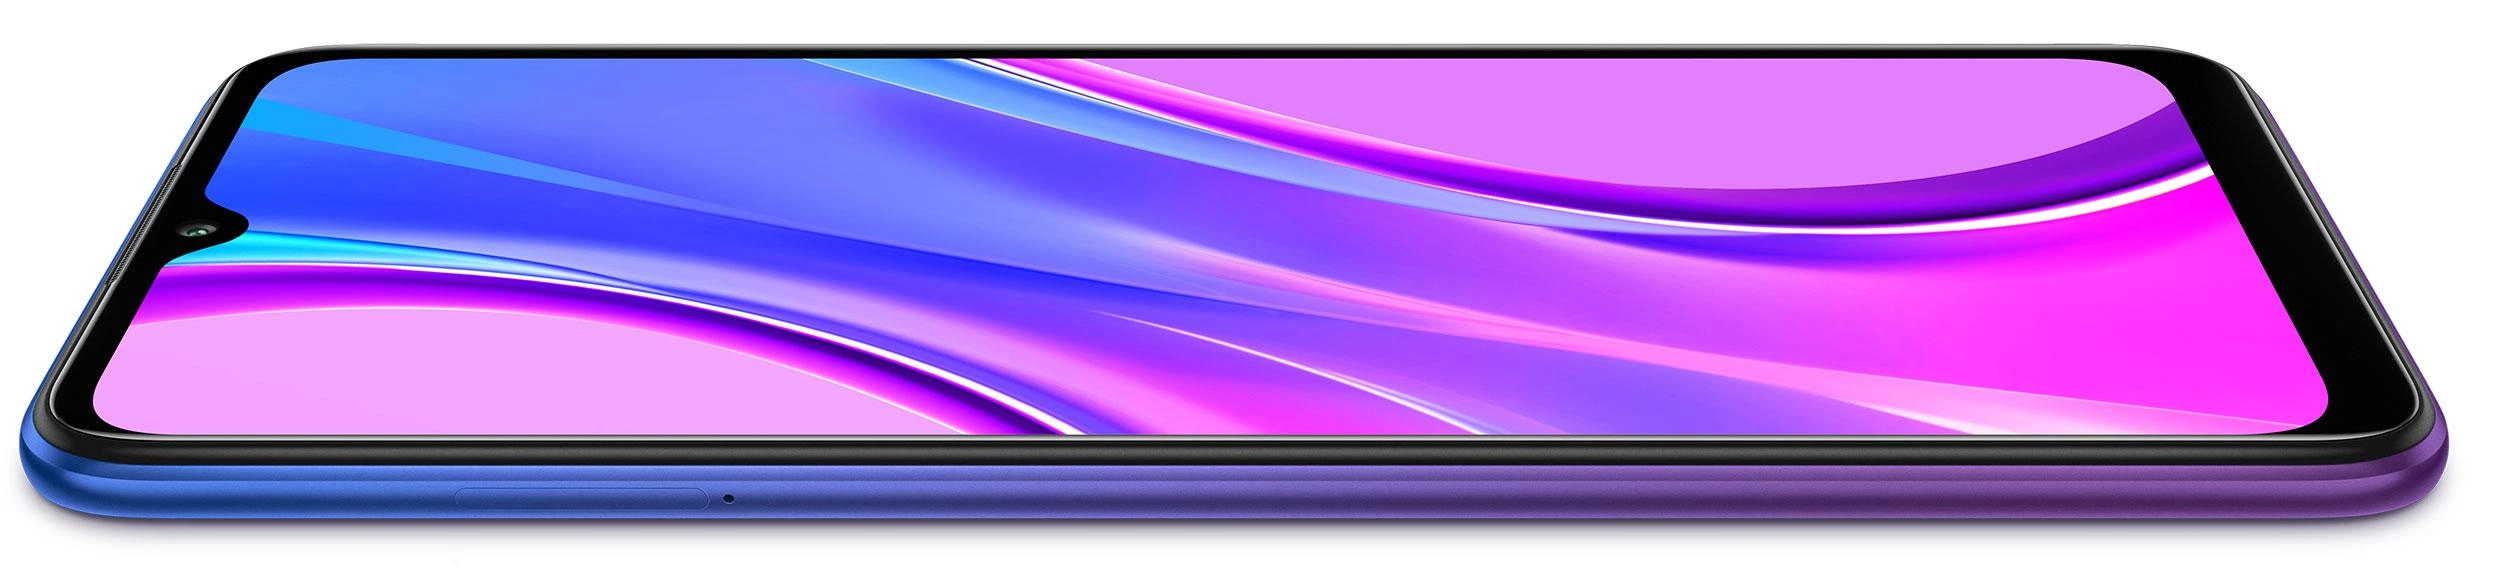 Купить Смартфон Xiaomi Redmi 9 3/32Gb Purple